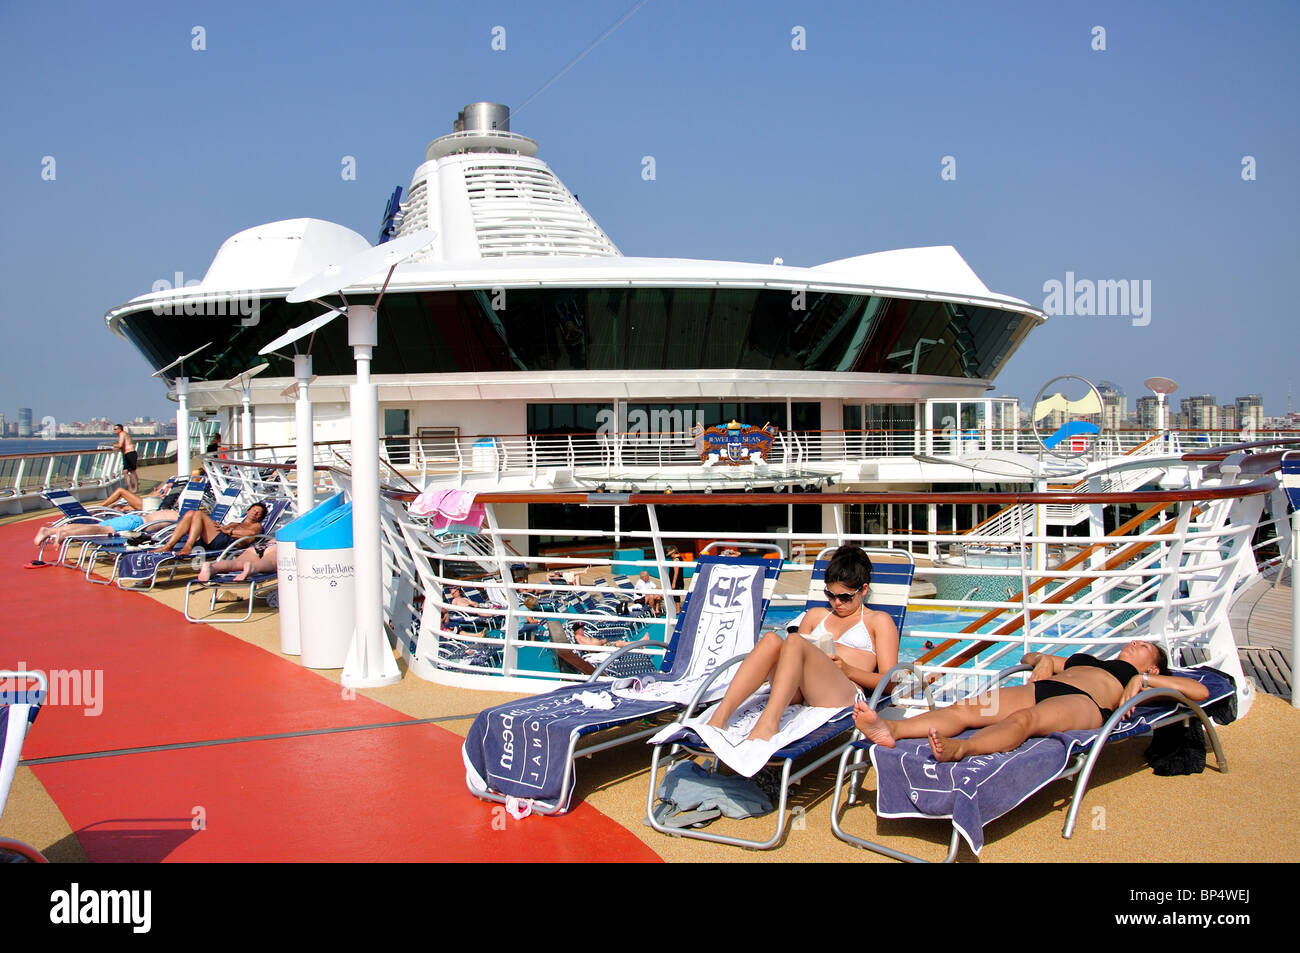 Plage de piscine, Royal Caribbean Cruises 'Jewel of the Seas", navire de croisière de la mer Baltique, Europe Banque D'Images